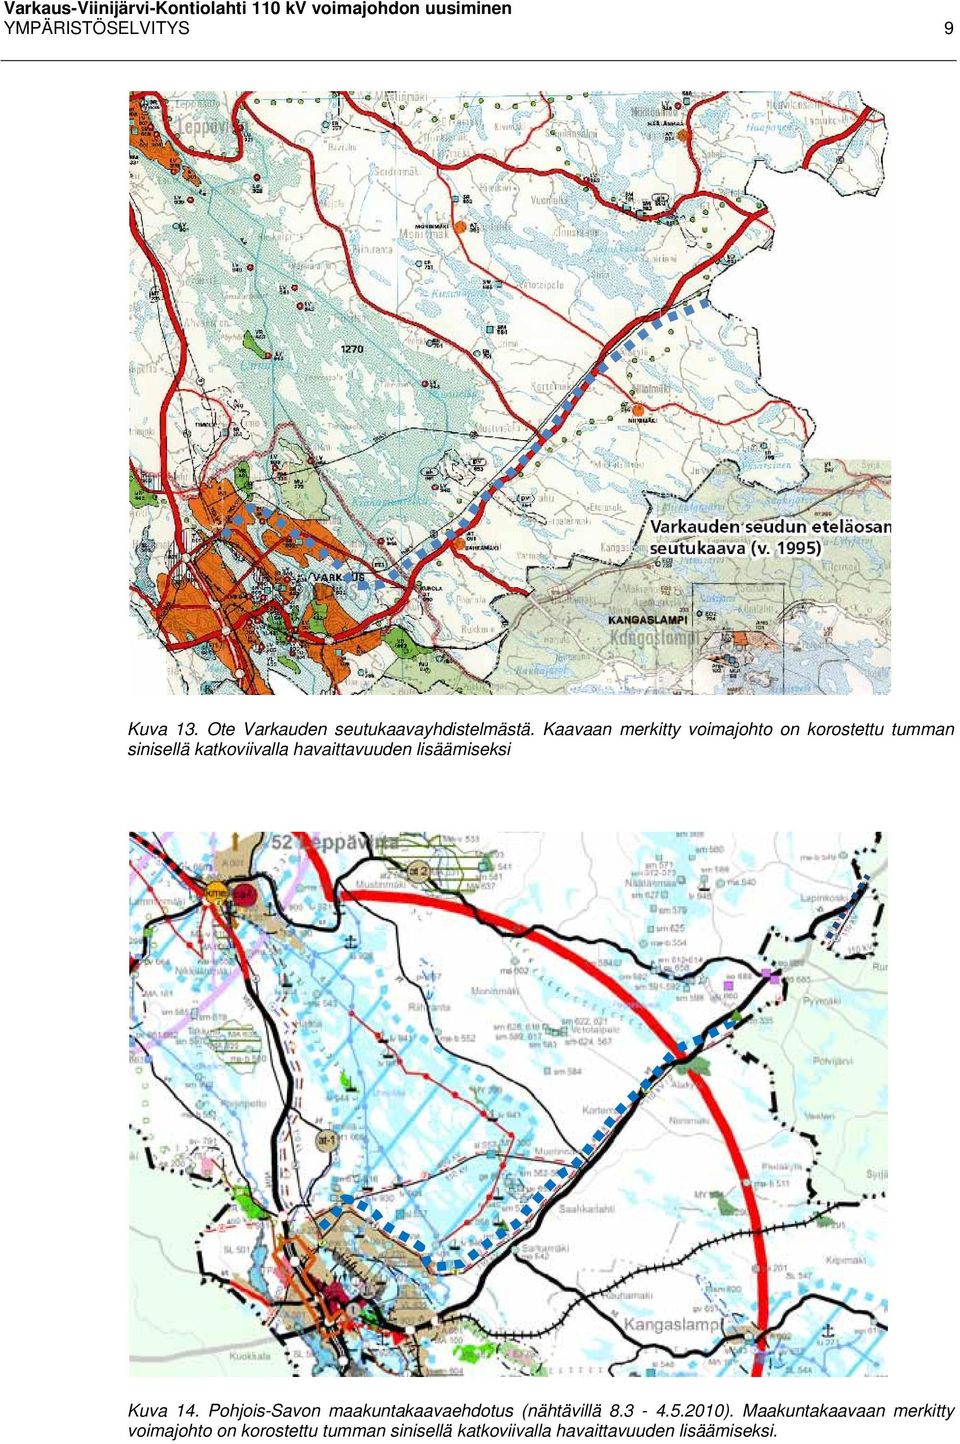 lisäämiseksi Kuva 14. Pohjois-Savon maakuntakaavaehdotus (nähtävillä 8.3-4.5.2010).